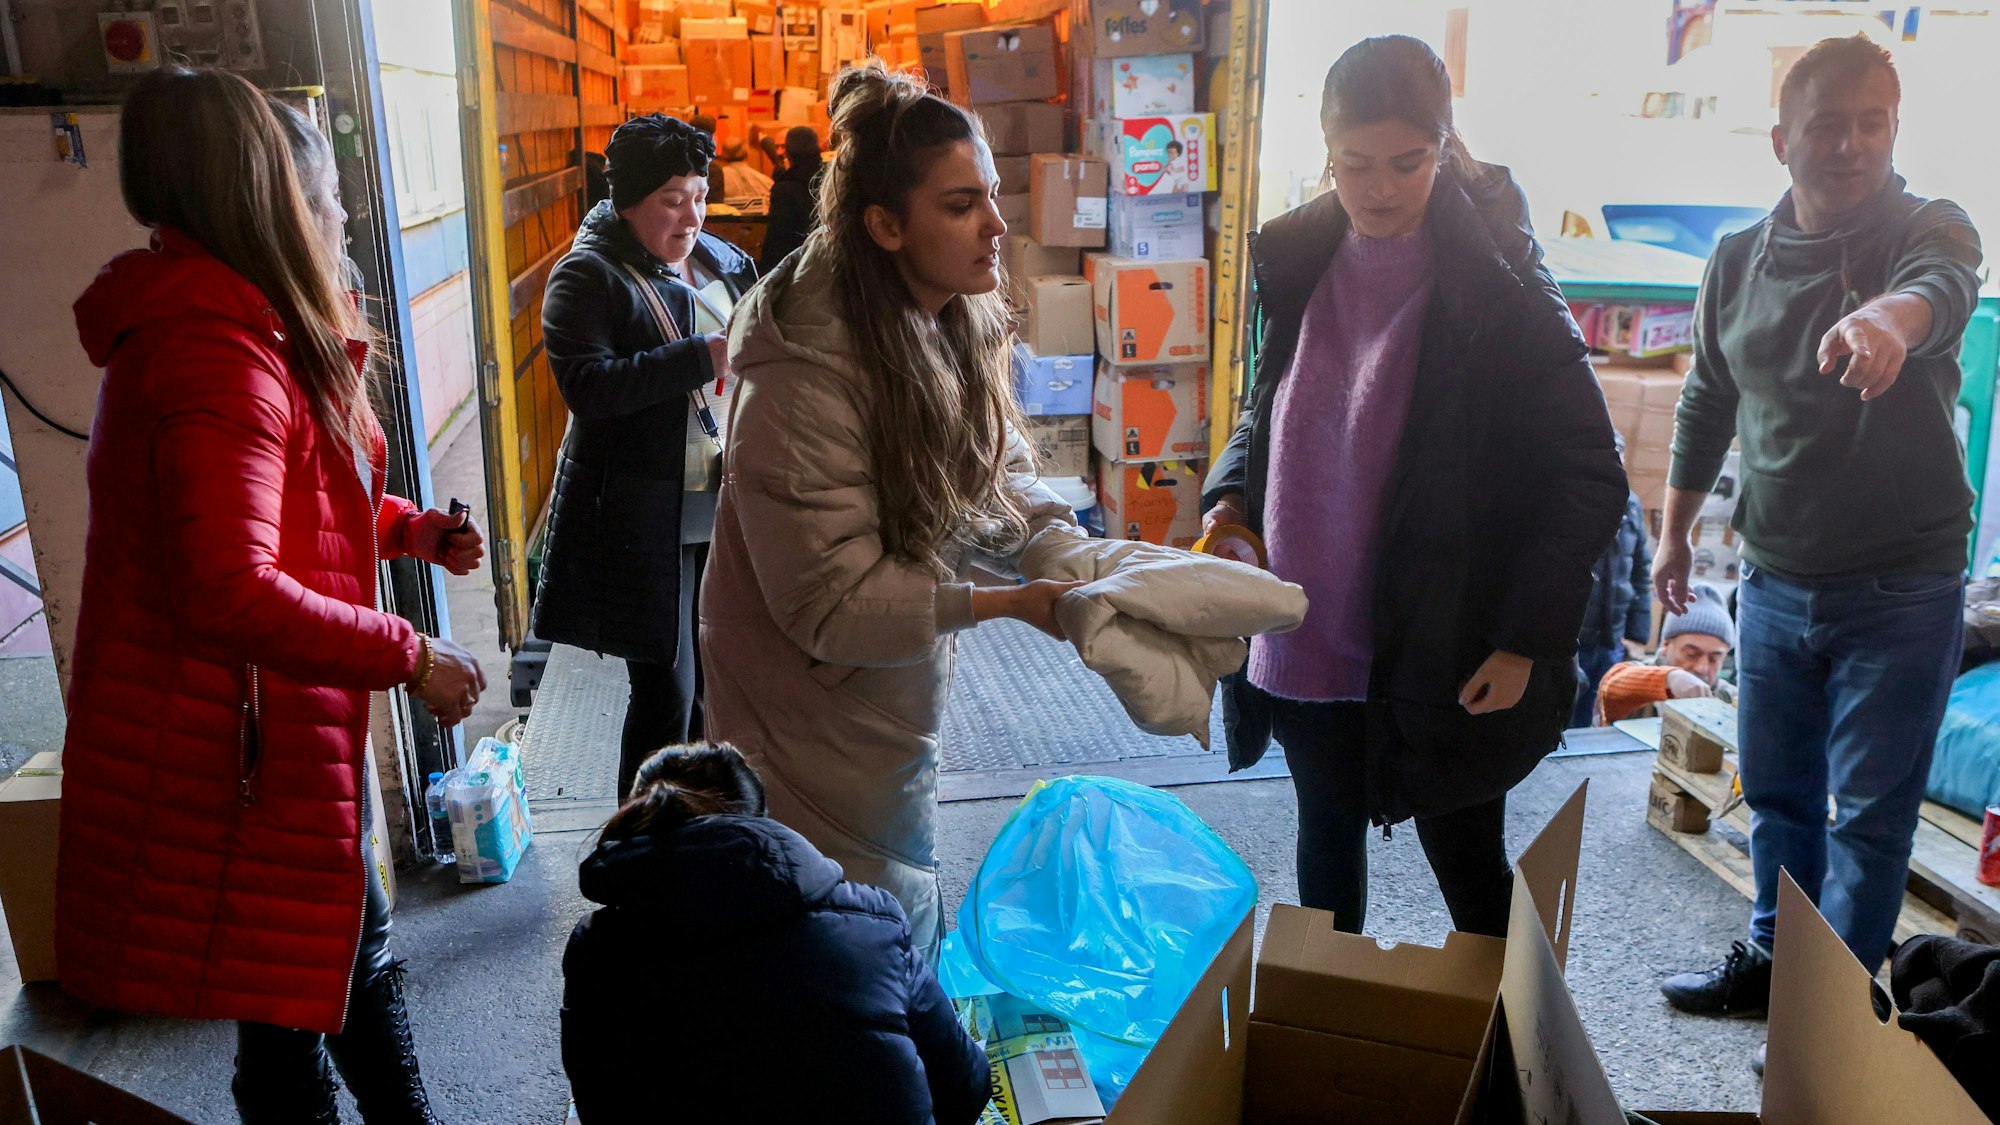 Mitarbeiter, Freunde und Kollegen der Firma AC Gastro in Köln sammeln Spenden für die Erdbebenopfer in der Türkei und Syrien und verladen Kartons auf Lkw im Niehler Hafen in Köln.